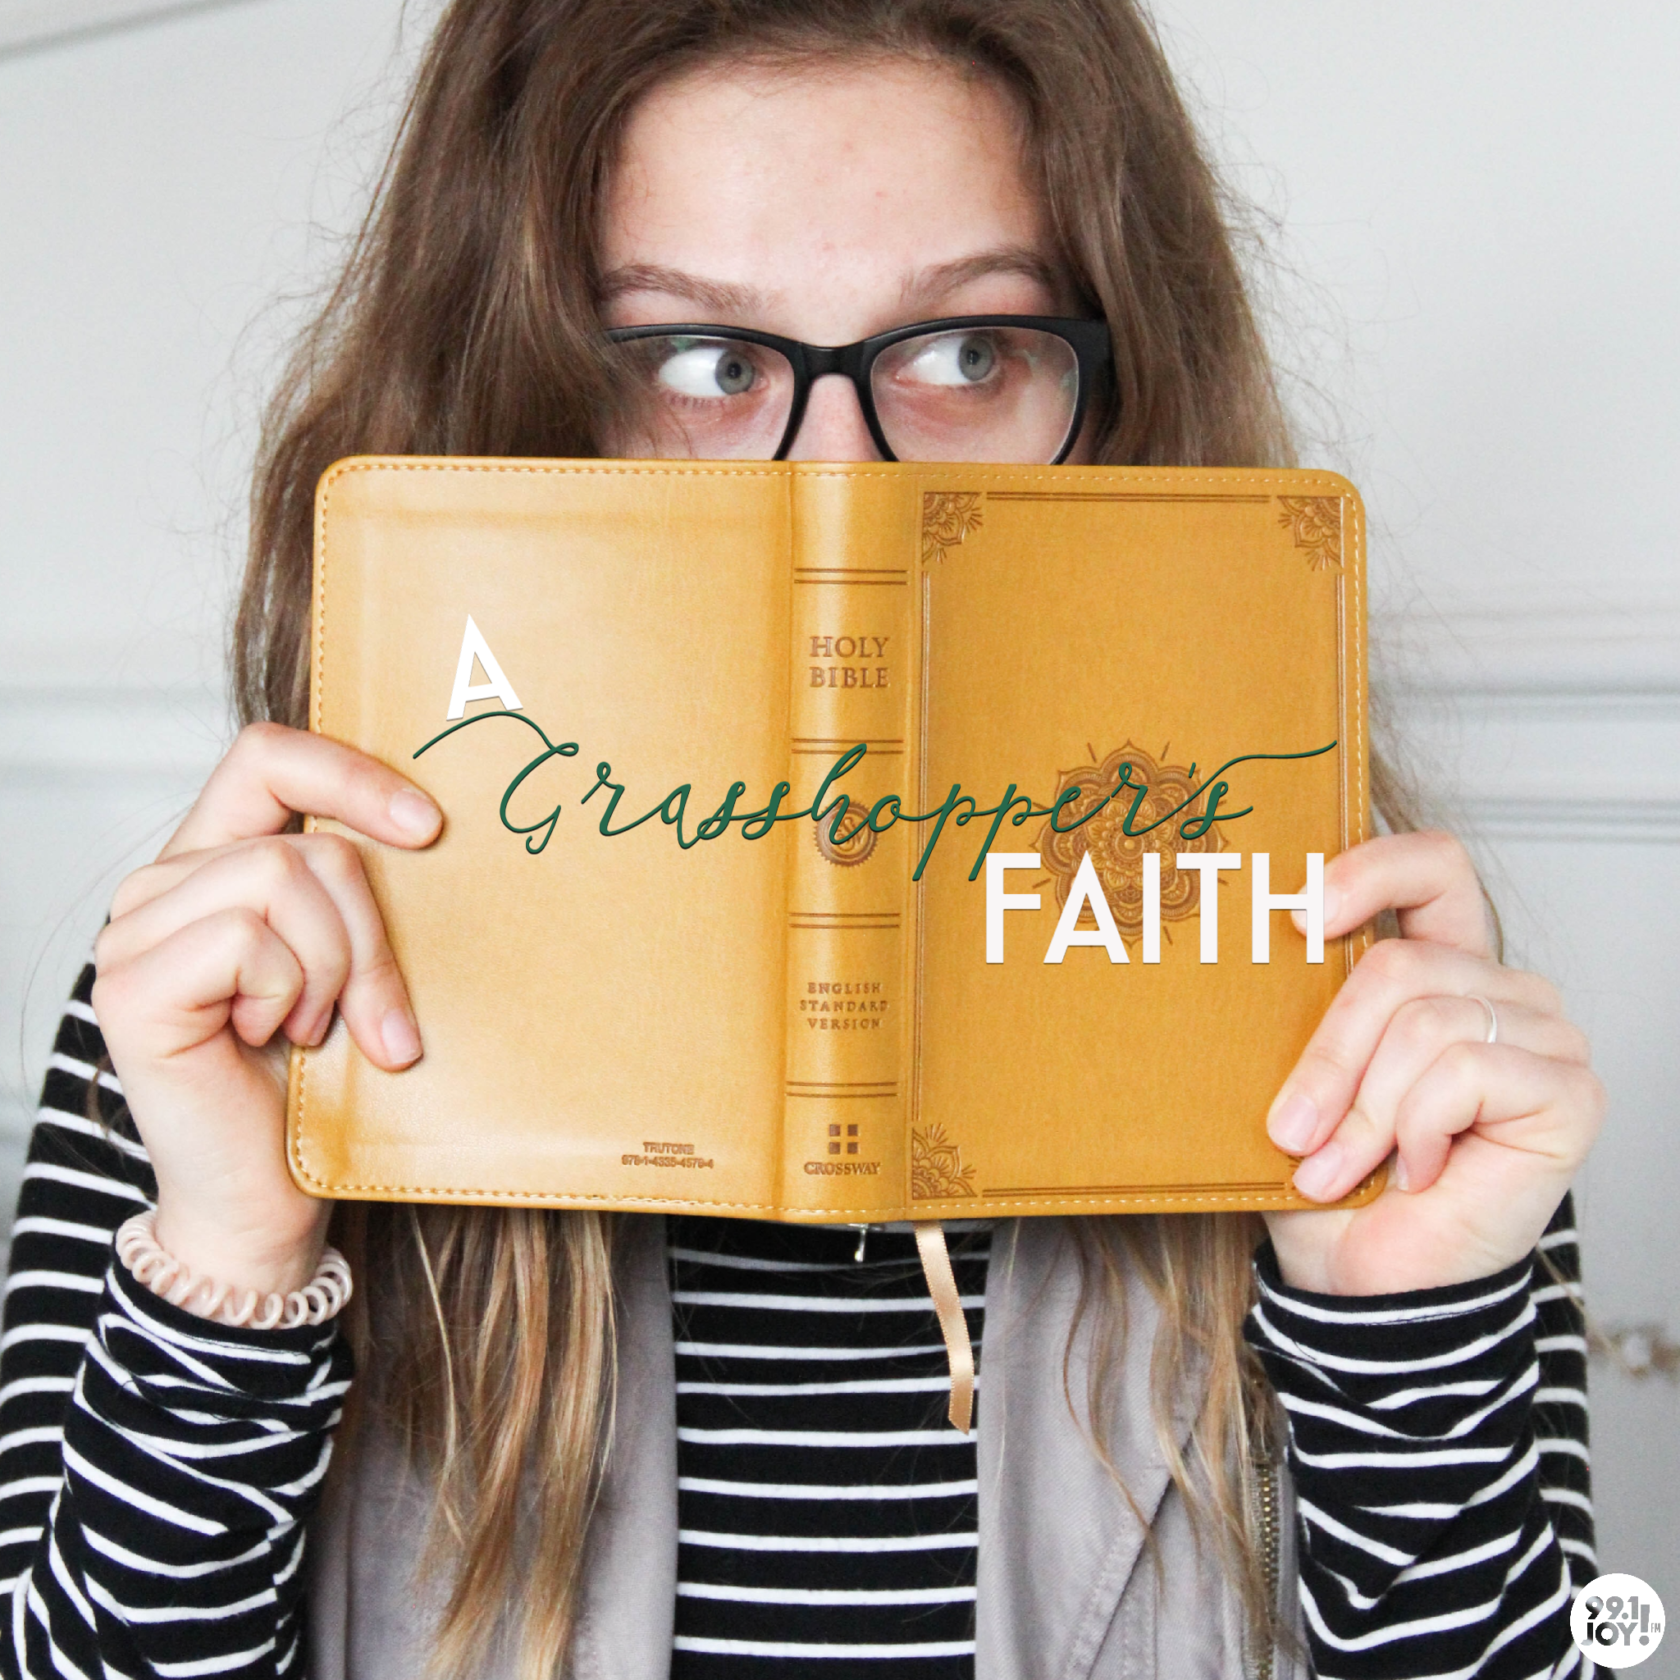 A Grasshopper’s Faith